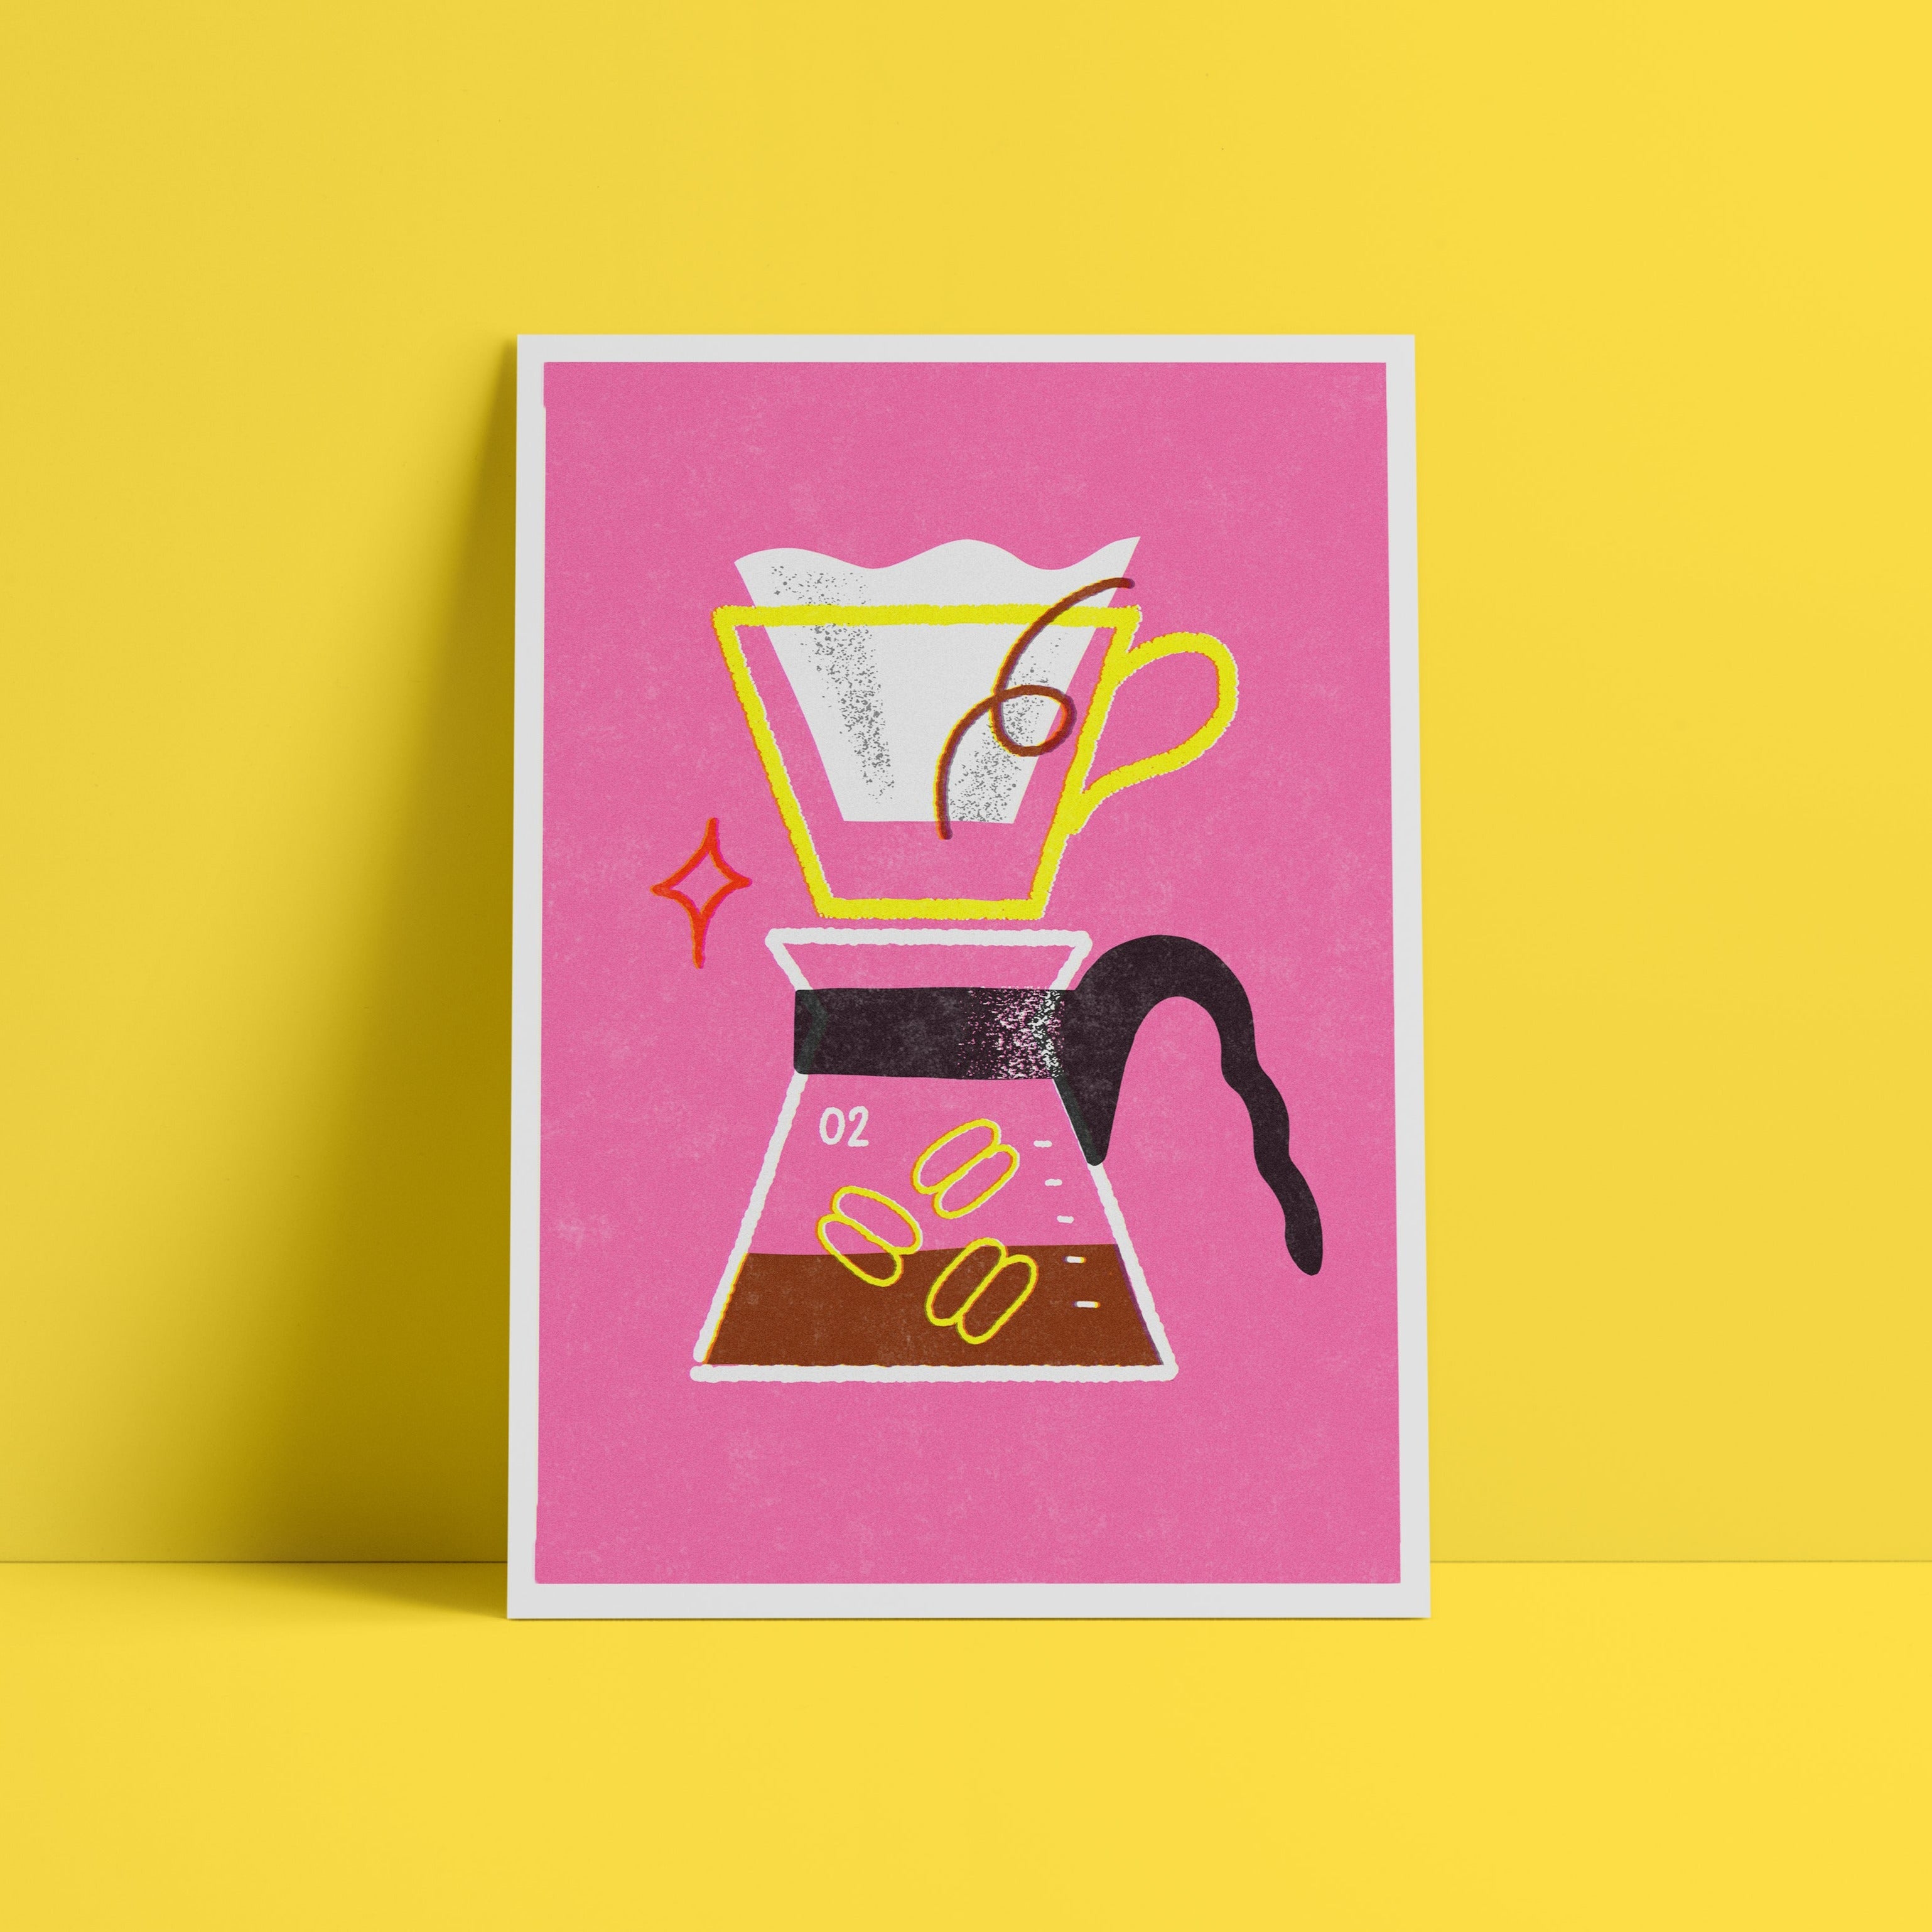 Hario Coffee Maker - Sara Marcos